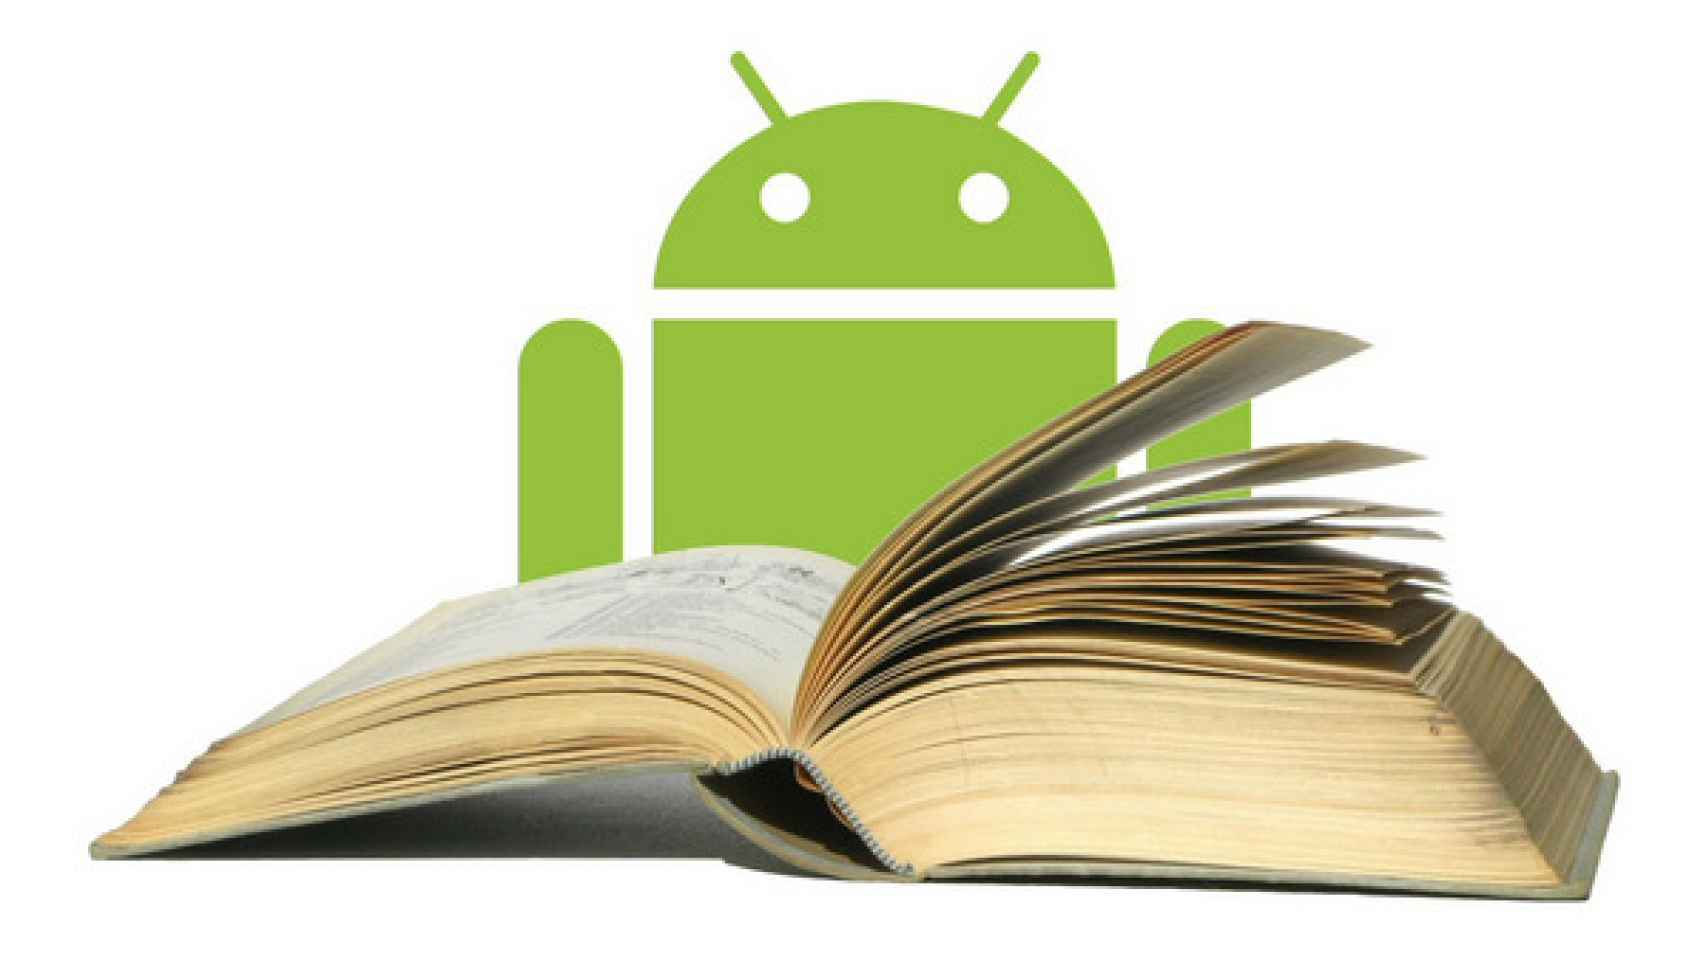 Las mejores apps Android para guardar información y leer más tarde